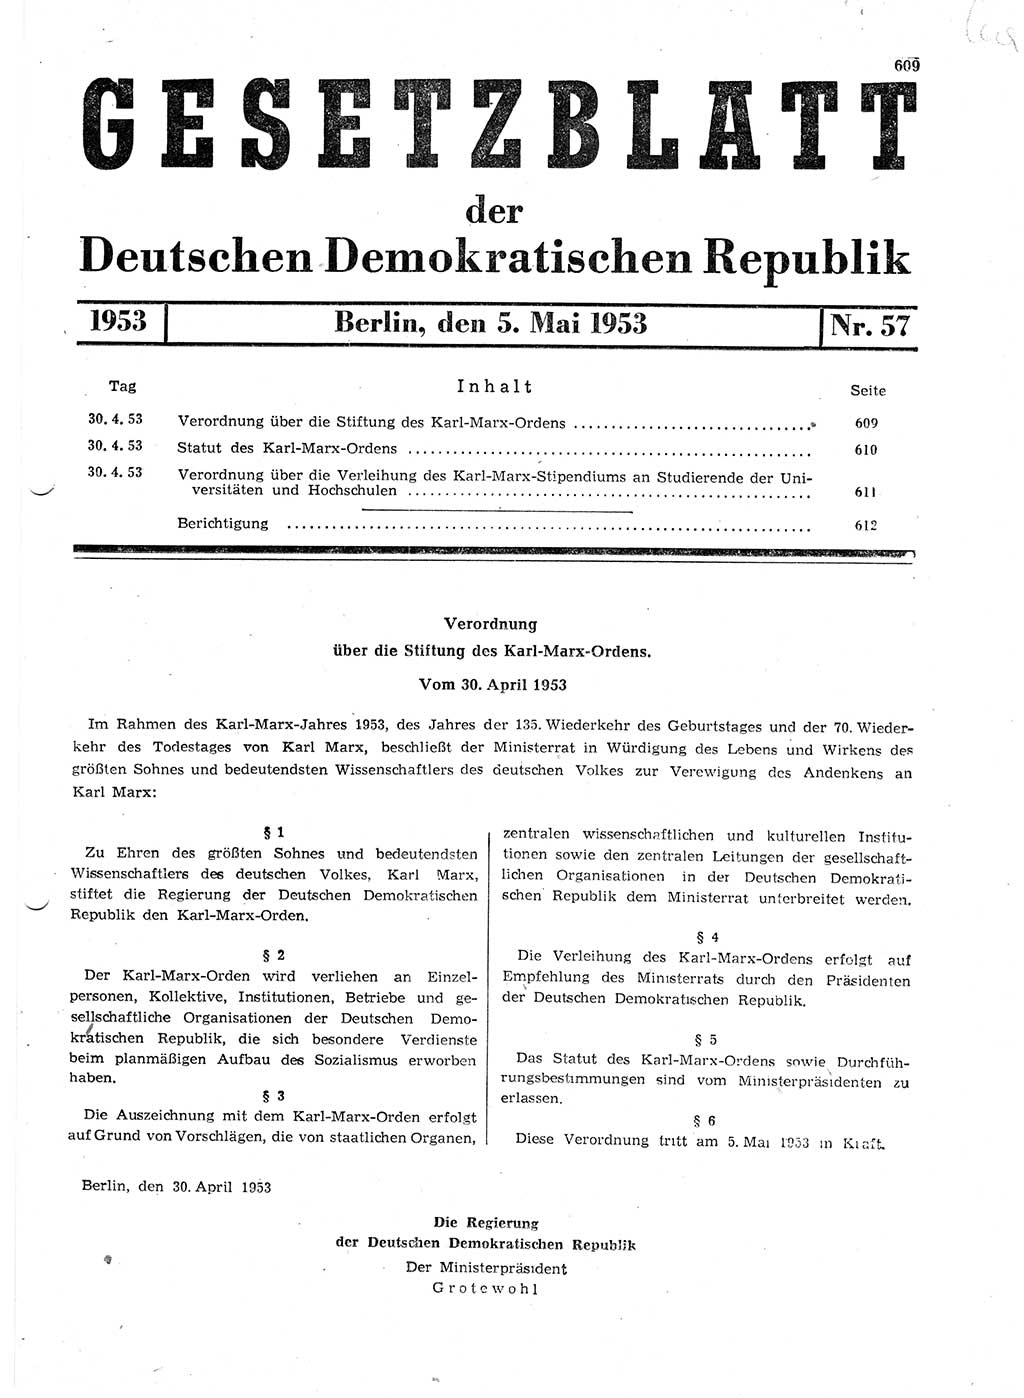 Gesetzblatt (GBl.) der Deutschen Demokratischen Republik (DDR) 1953, Seite 609 (GBl. DDR 1953, S. 609)